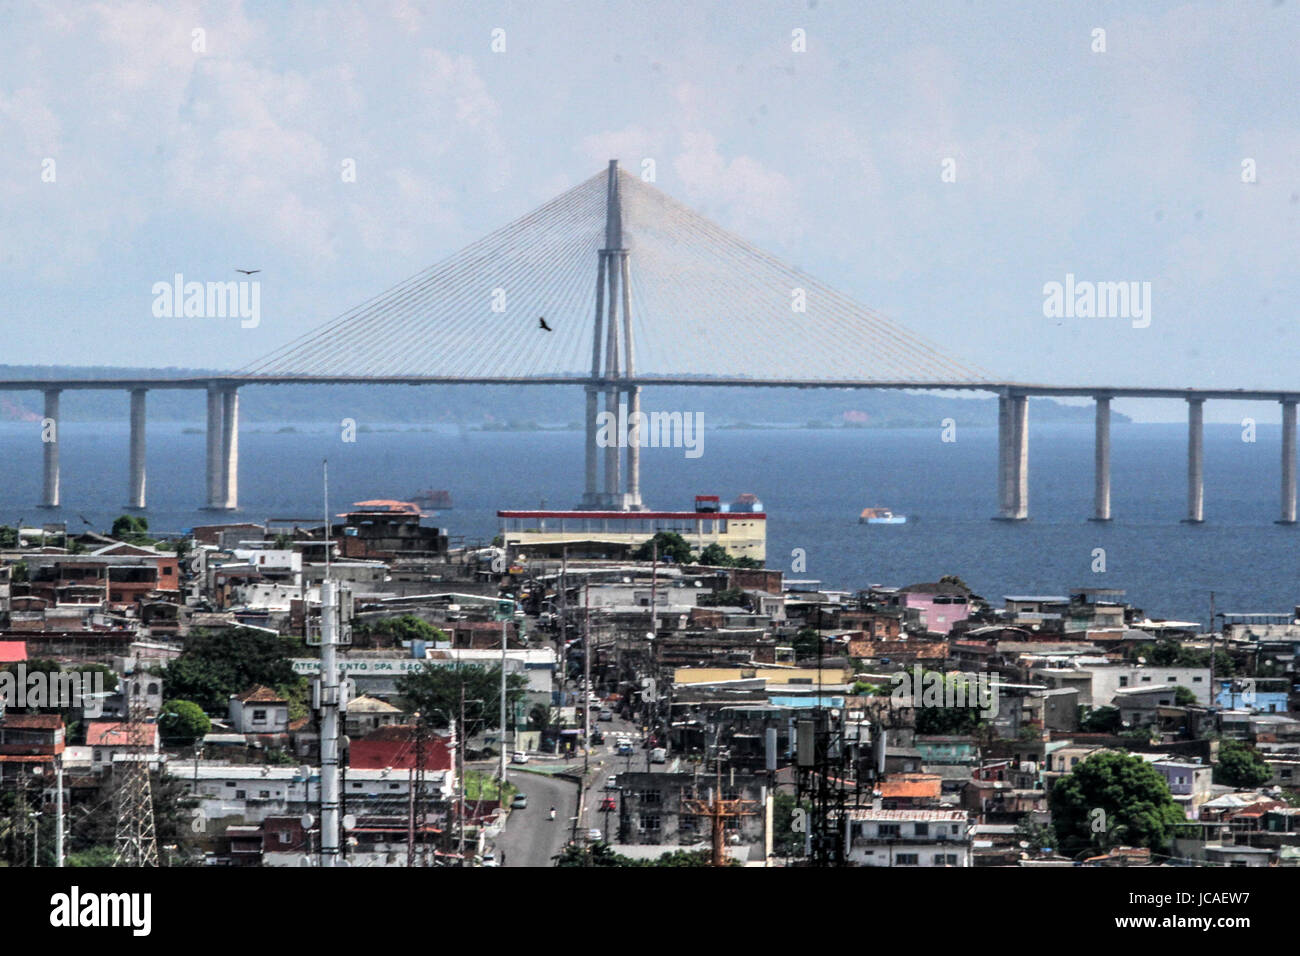 MANAUS, 10.06.2017 : vue d'une partie de la ville de Manaus et le pont. (Photo : Néstor J. Beremblum / Alamy News) Banque D'Images